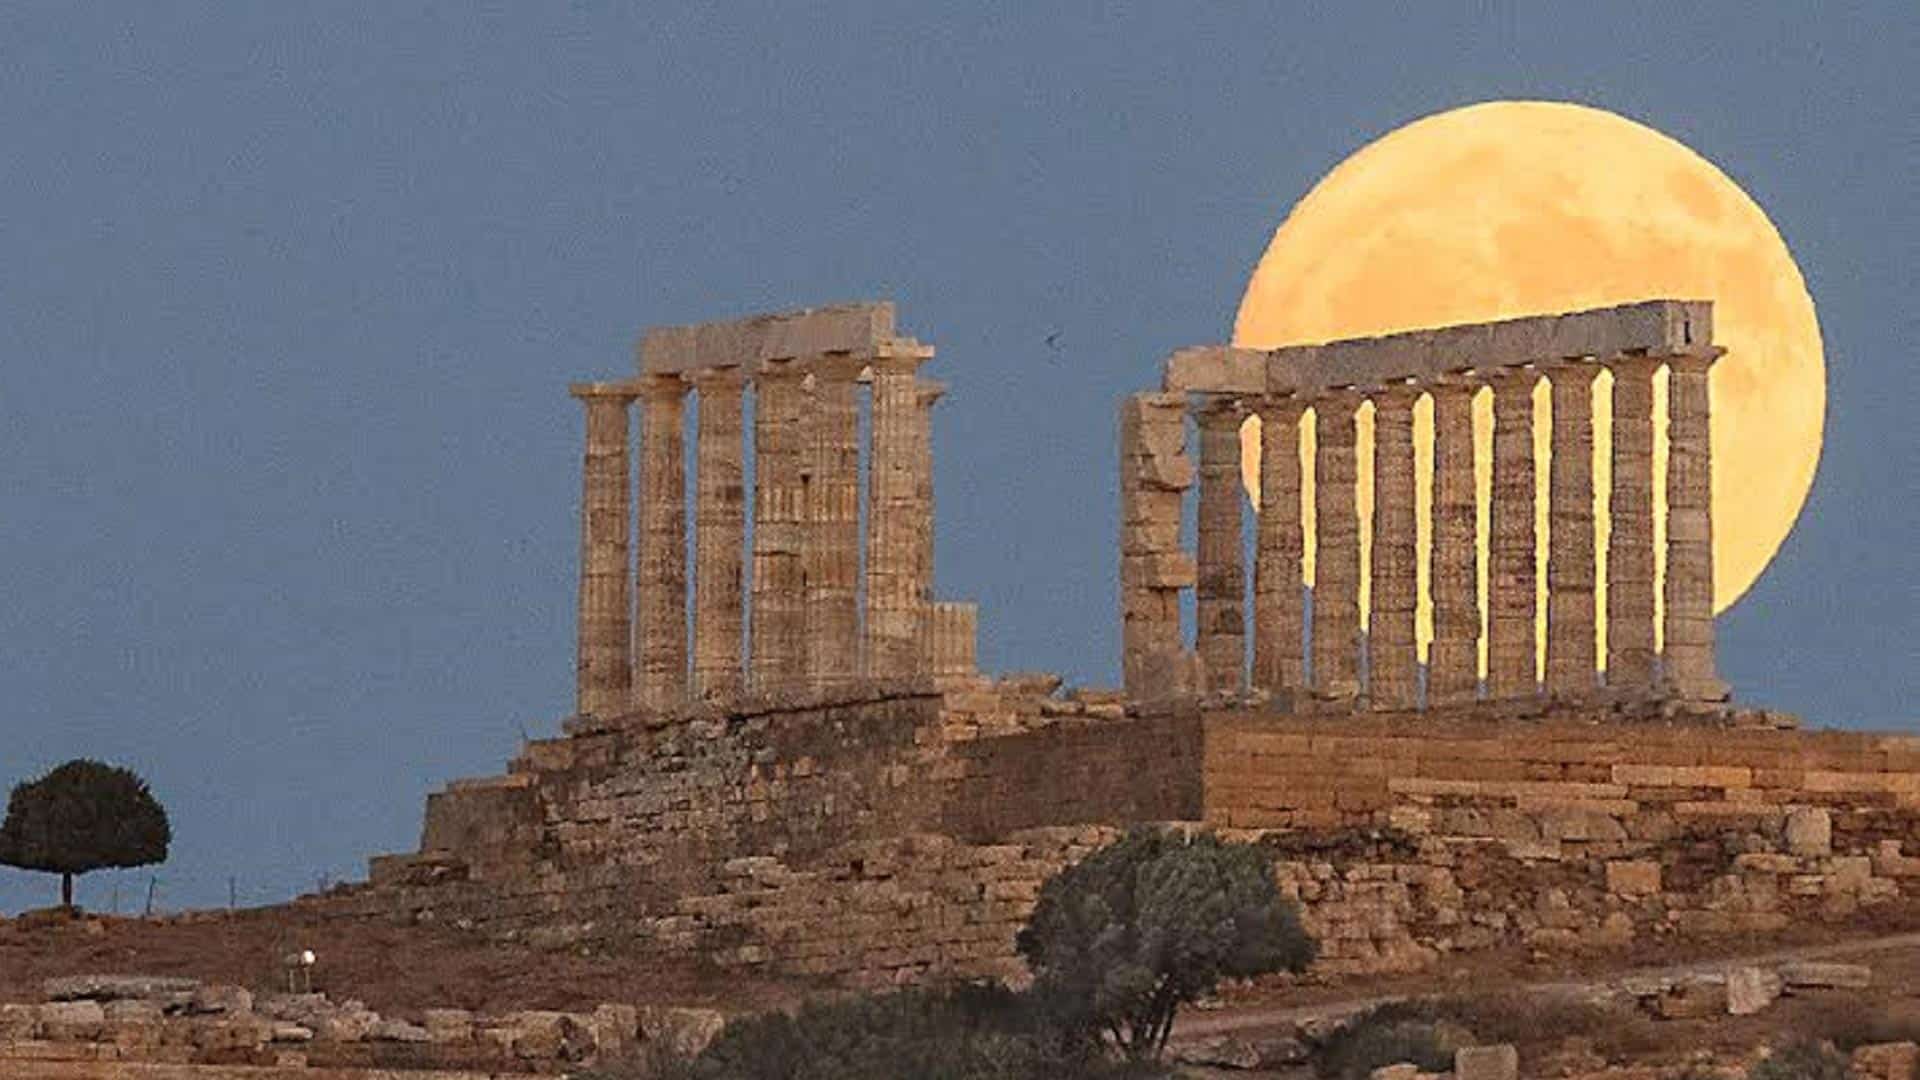 Πανσέληνος: Δείτε το εντυπωσιακό «Φεγγάρι του ελαφιού» στο Ναός του Ποσειδώνα στο Σούνιο